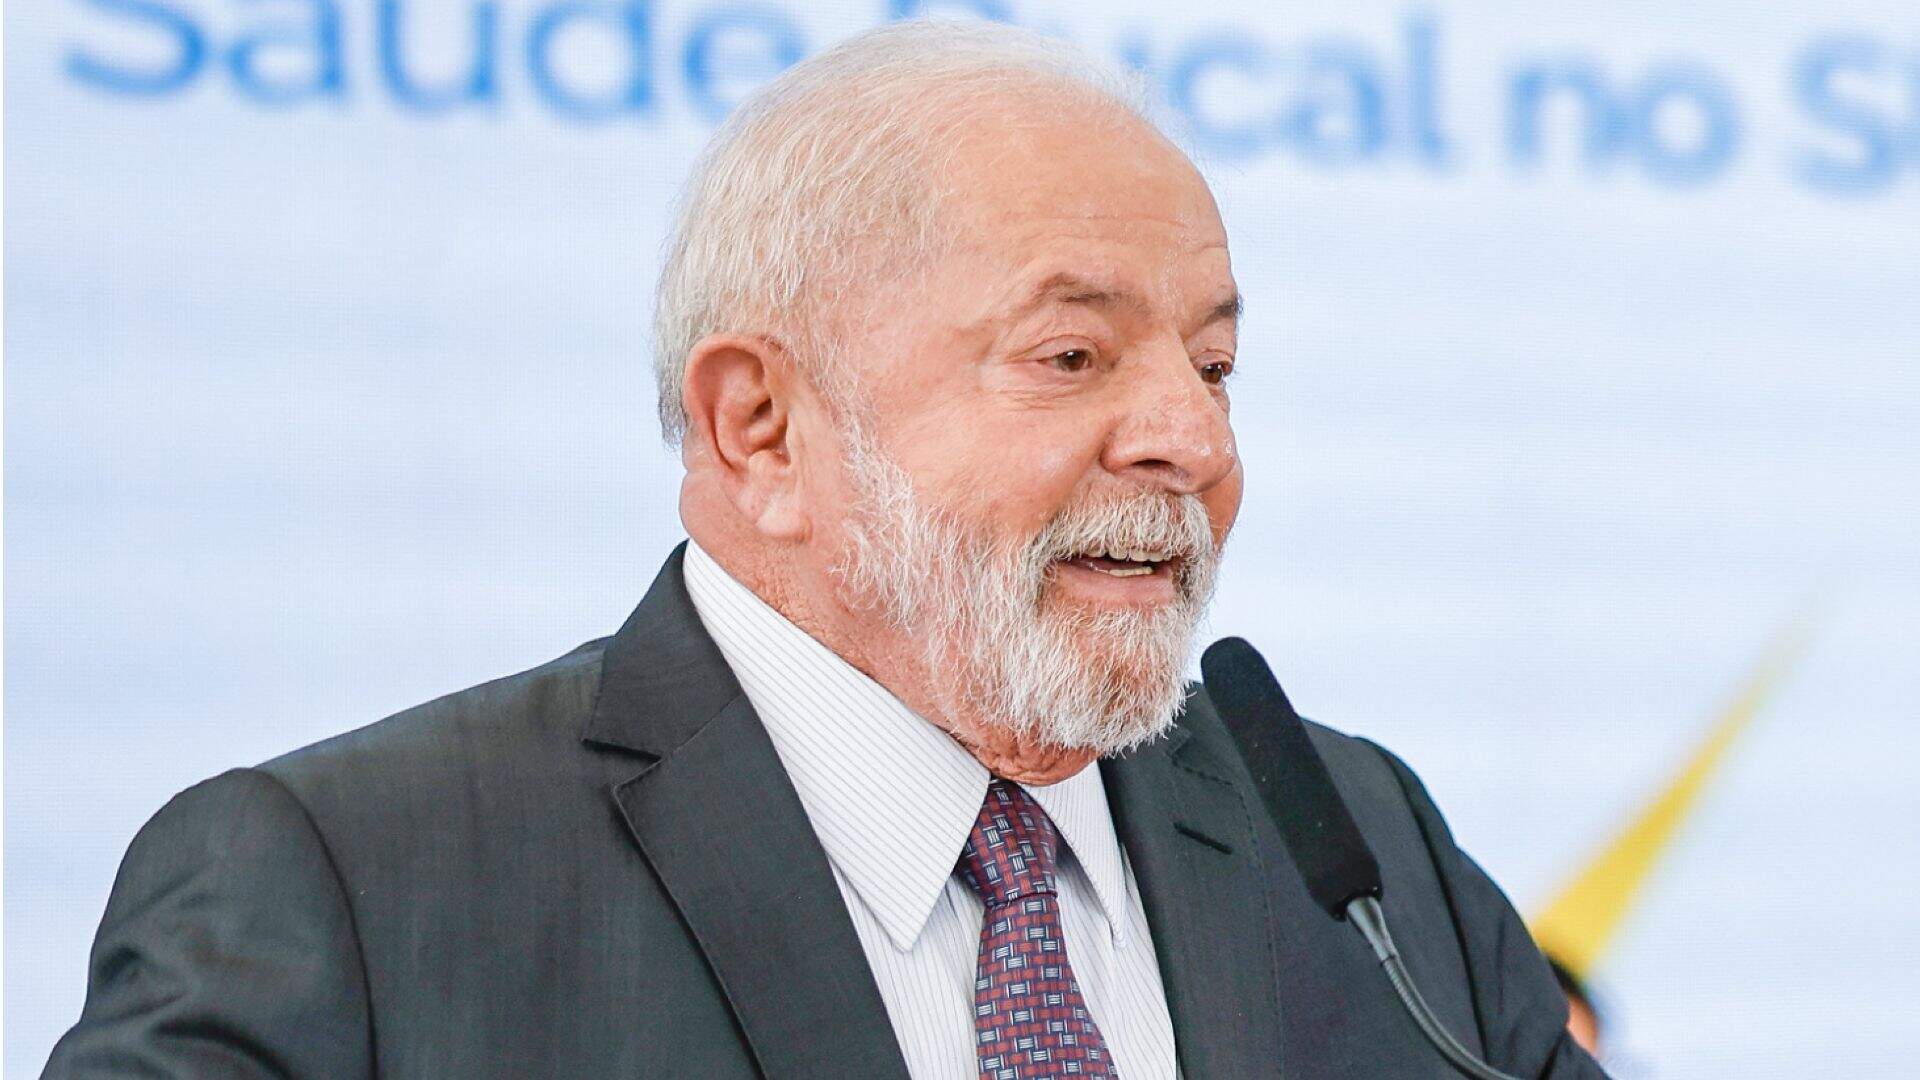 Governo Lula nomeia ex-deputado bolsonarista, que queria ‘desesquerdizar’ gestão, na Sudene